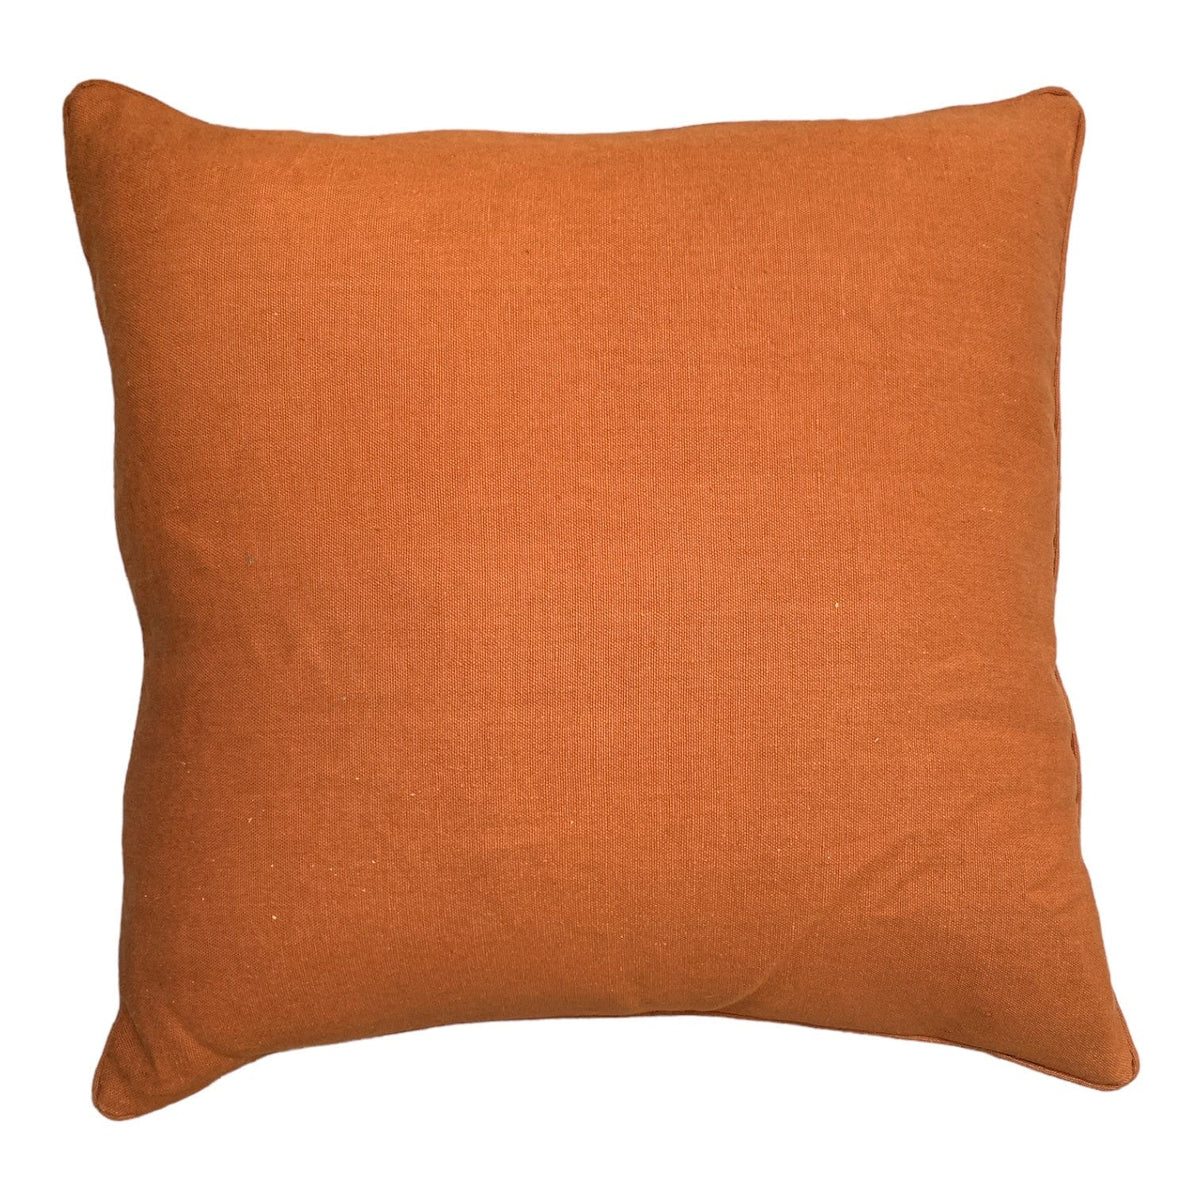 Tielt Terracotta 55x55cm Piped Cushion Little & Fox